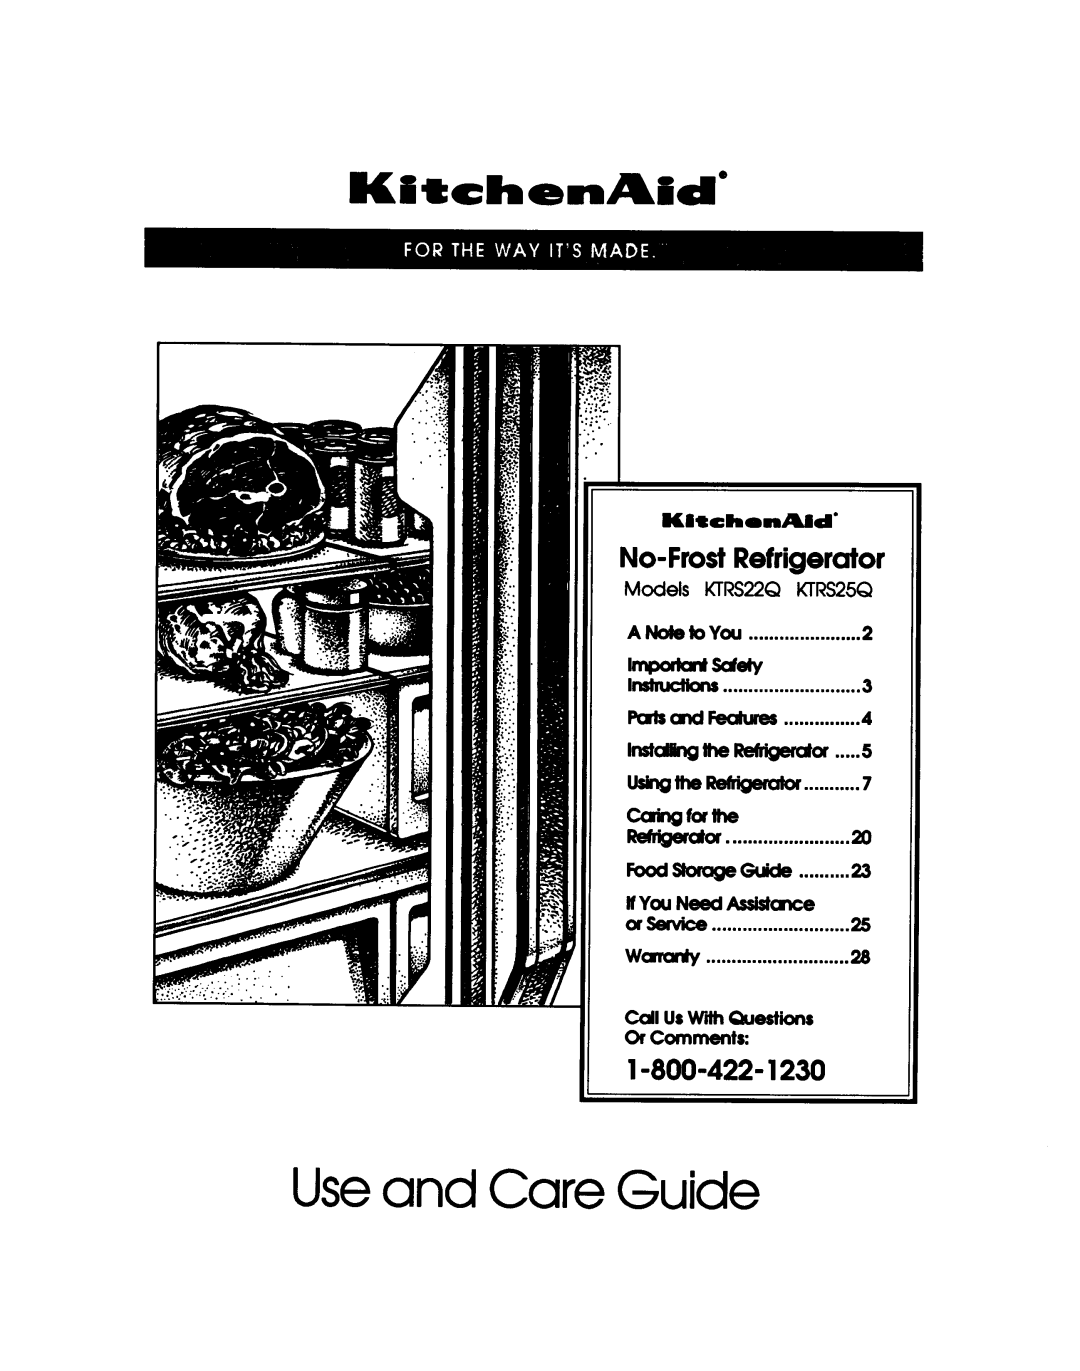 KitchenAid KTRS25Q, KTRS22Q manual 